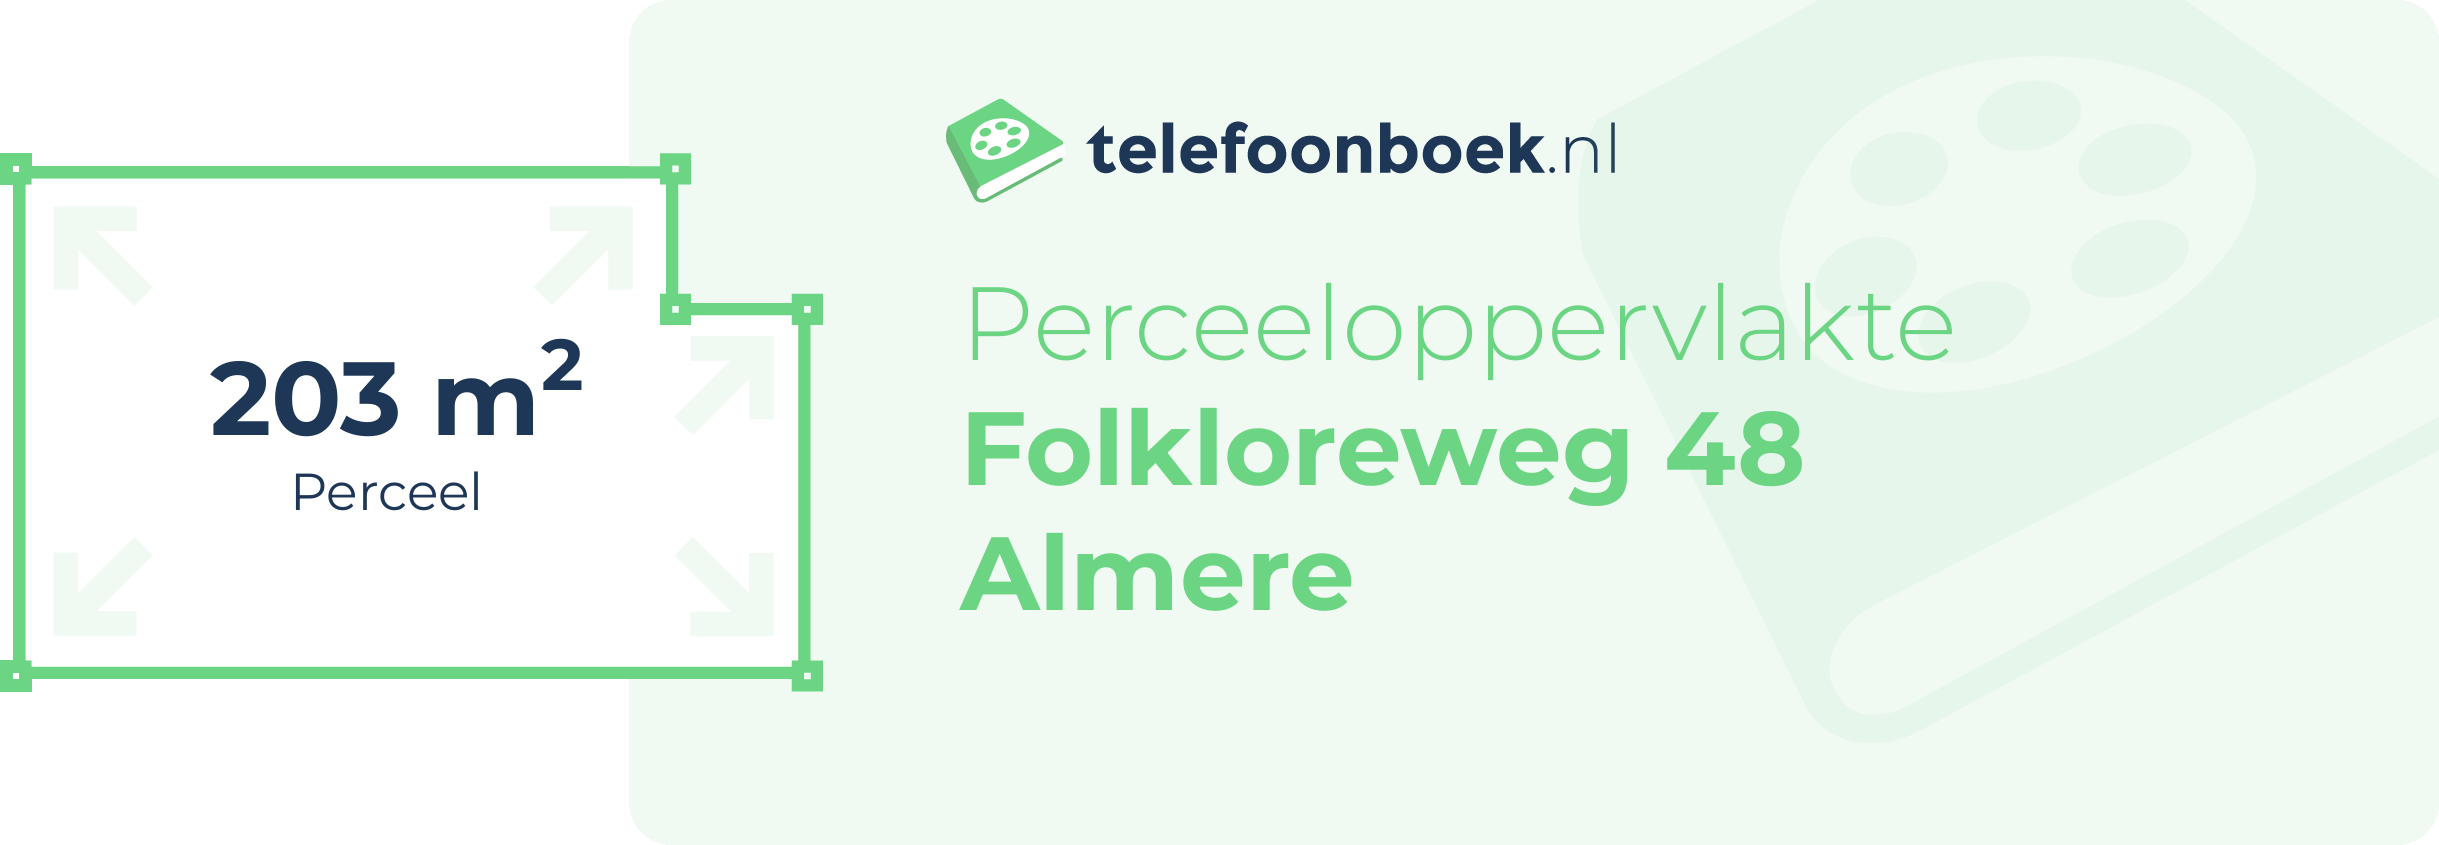 Perceeloppervlakte Folkloreweg 48 Almere